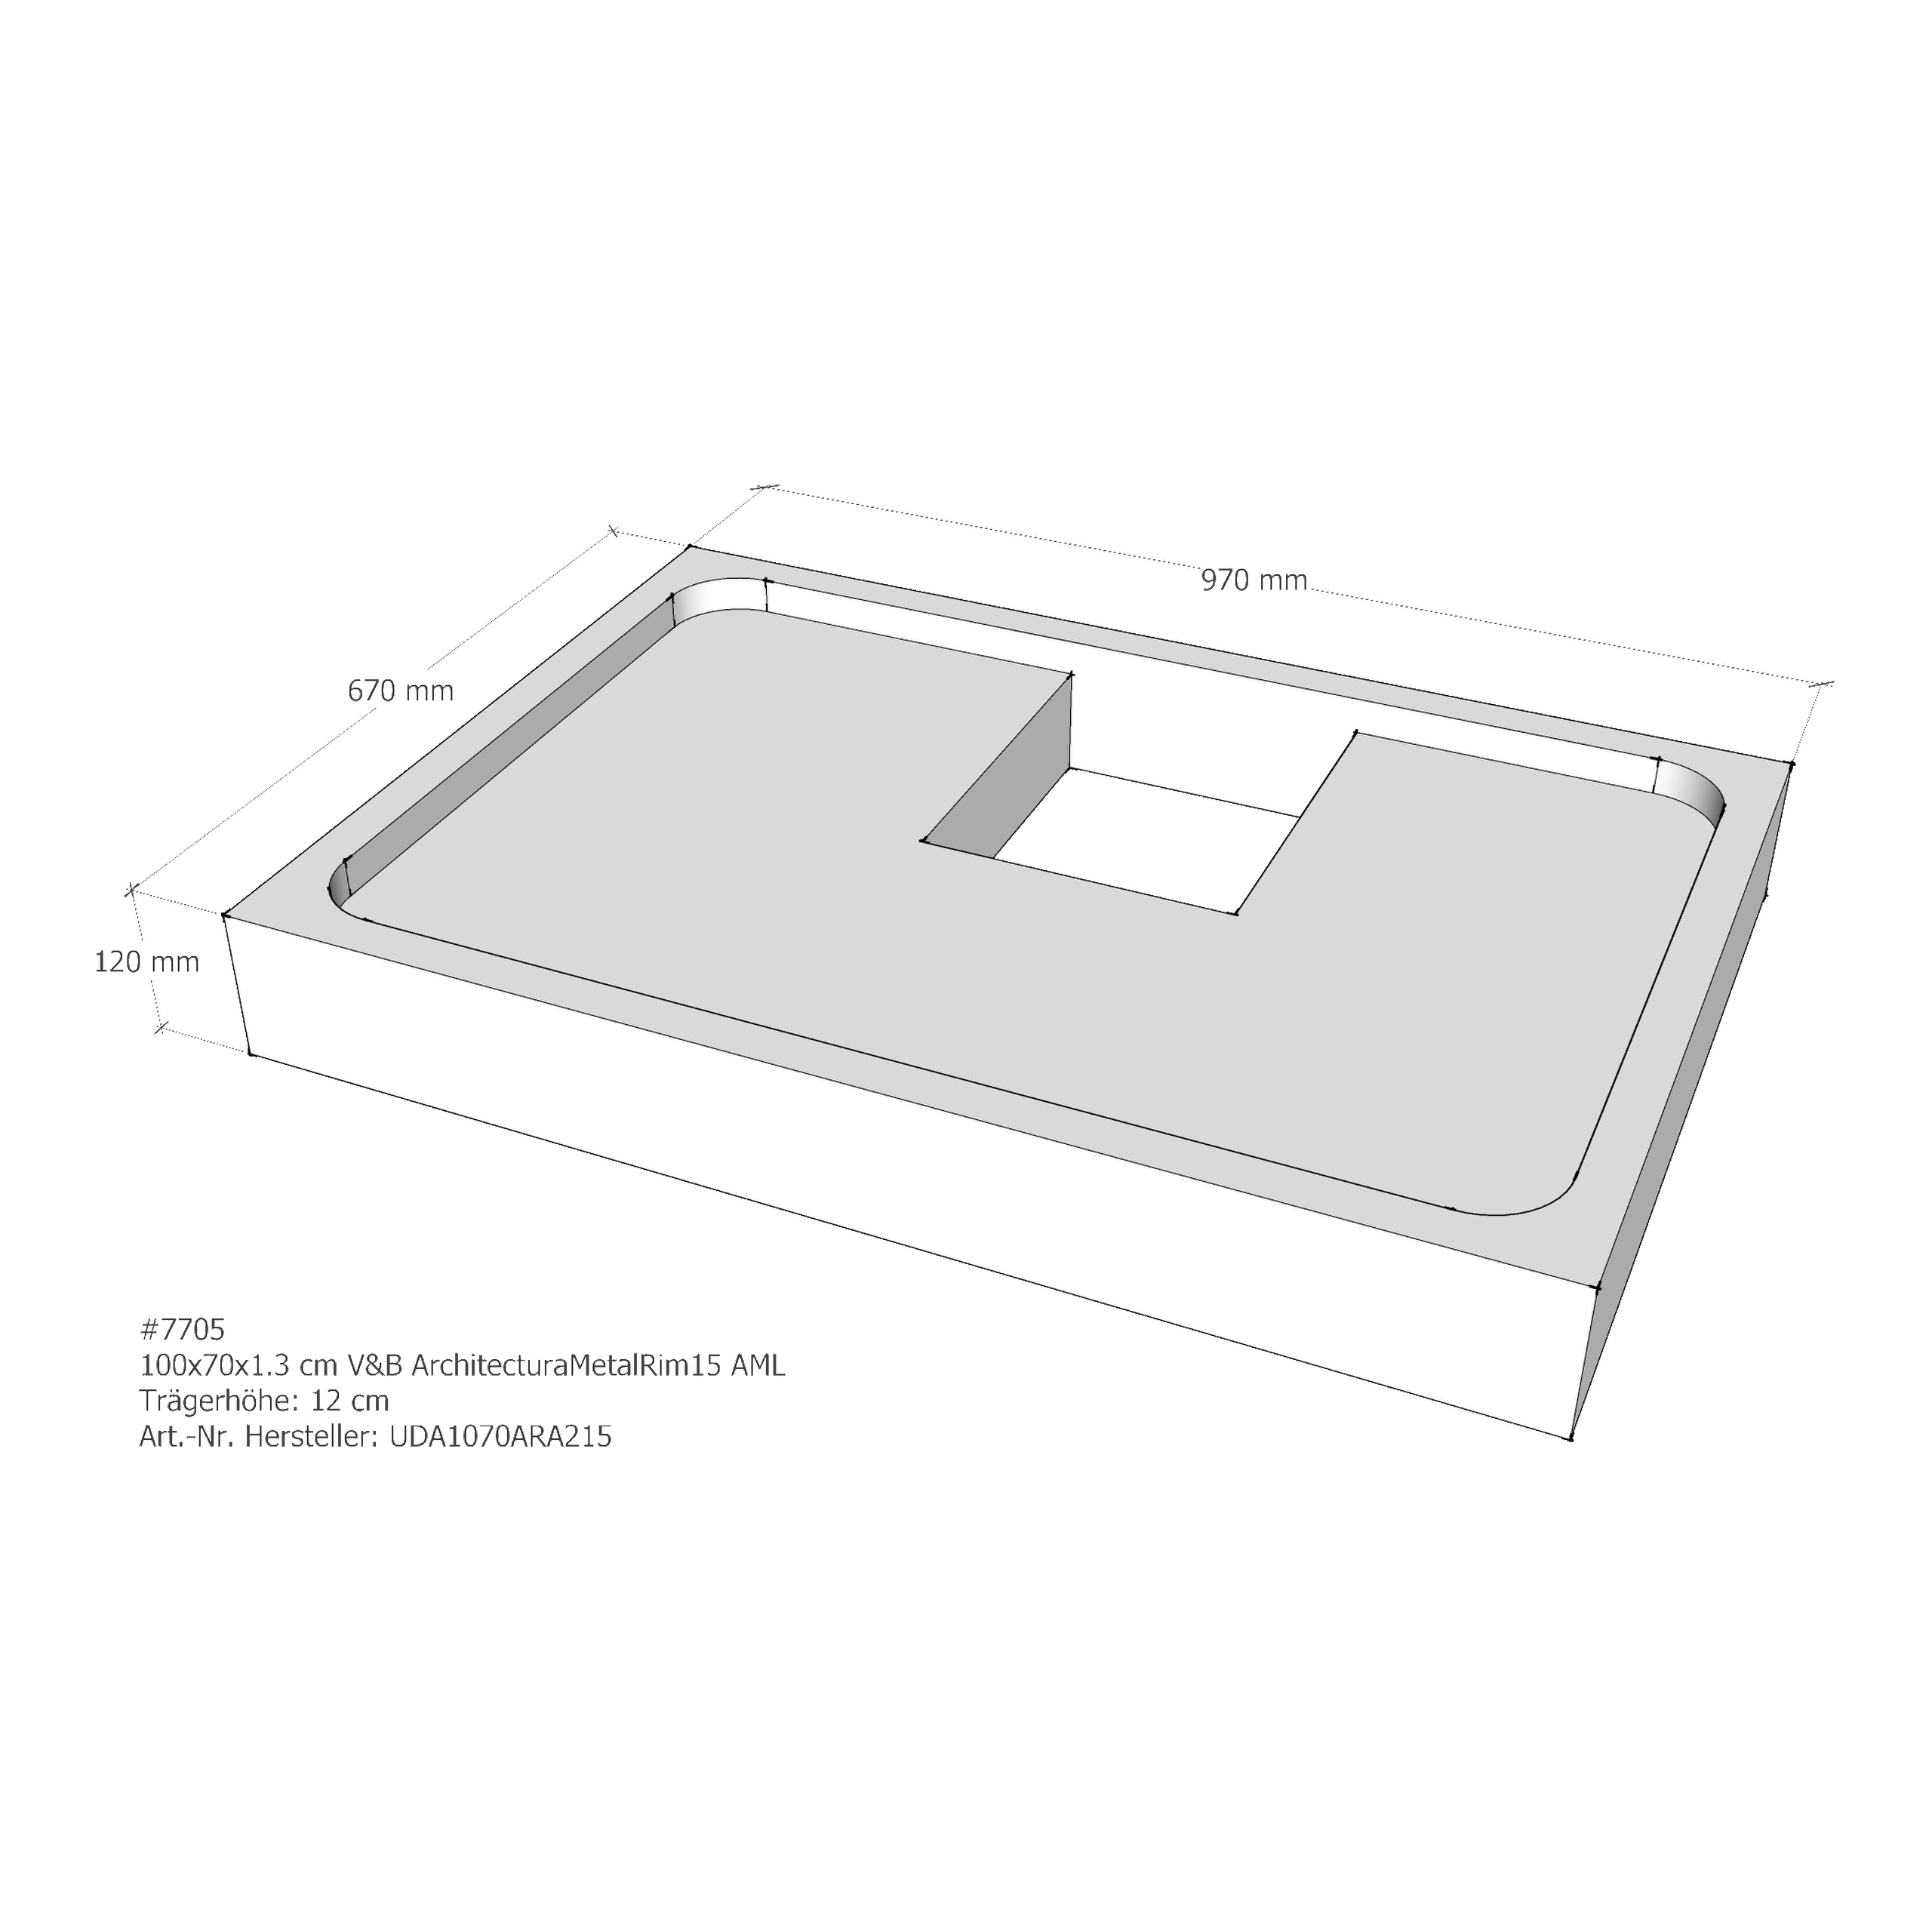 Duschwannenträger für Villeroy & Boch ArchitecturaMetalRim15 100 × 70 × 1,3 cm